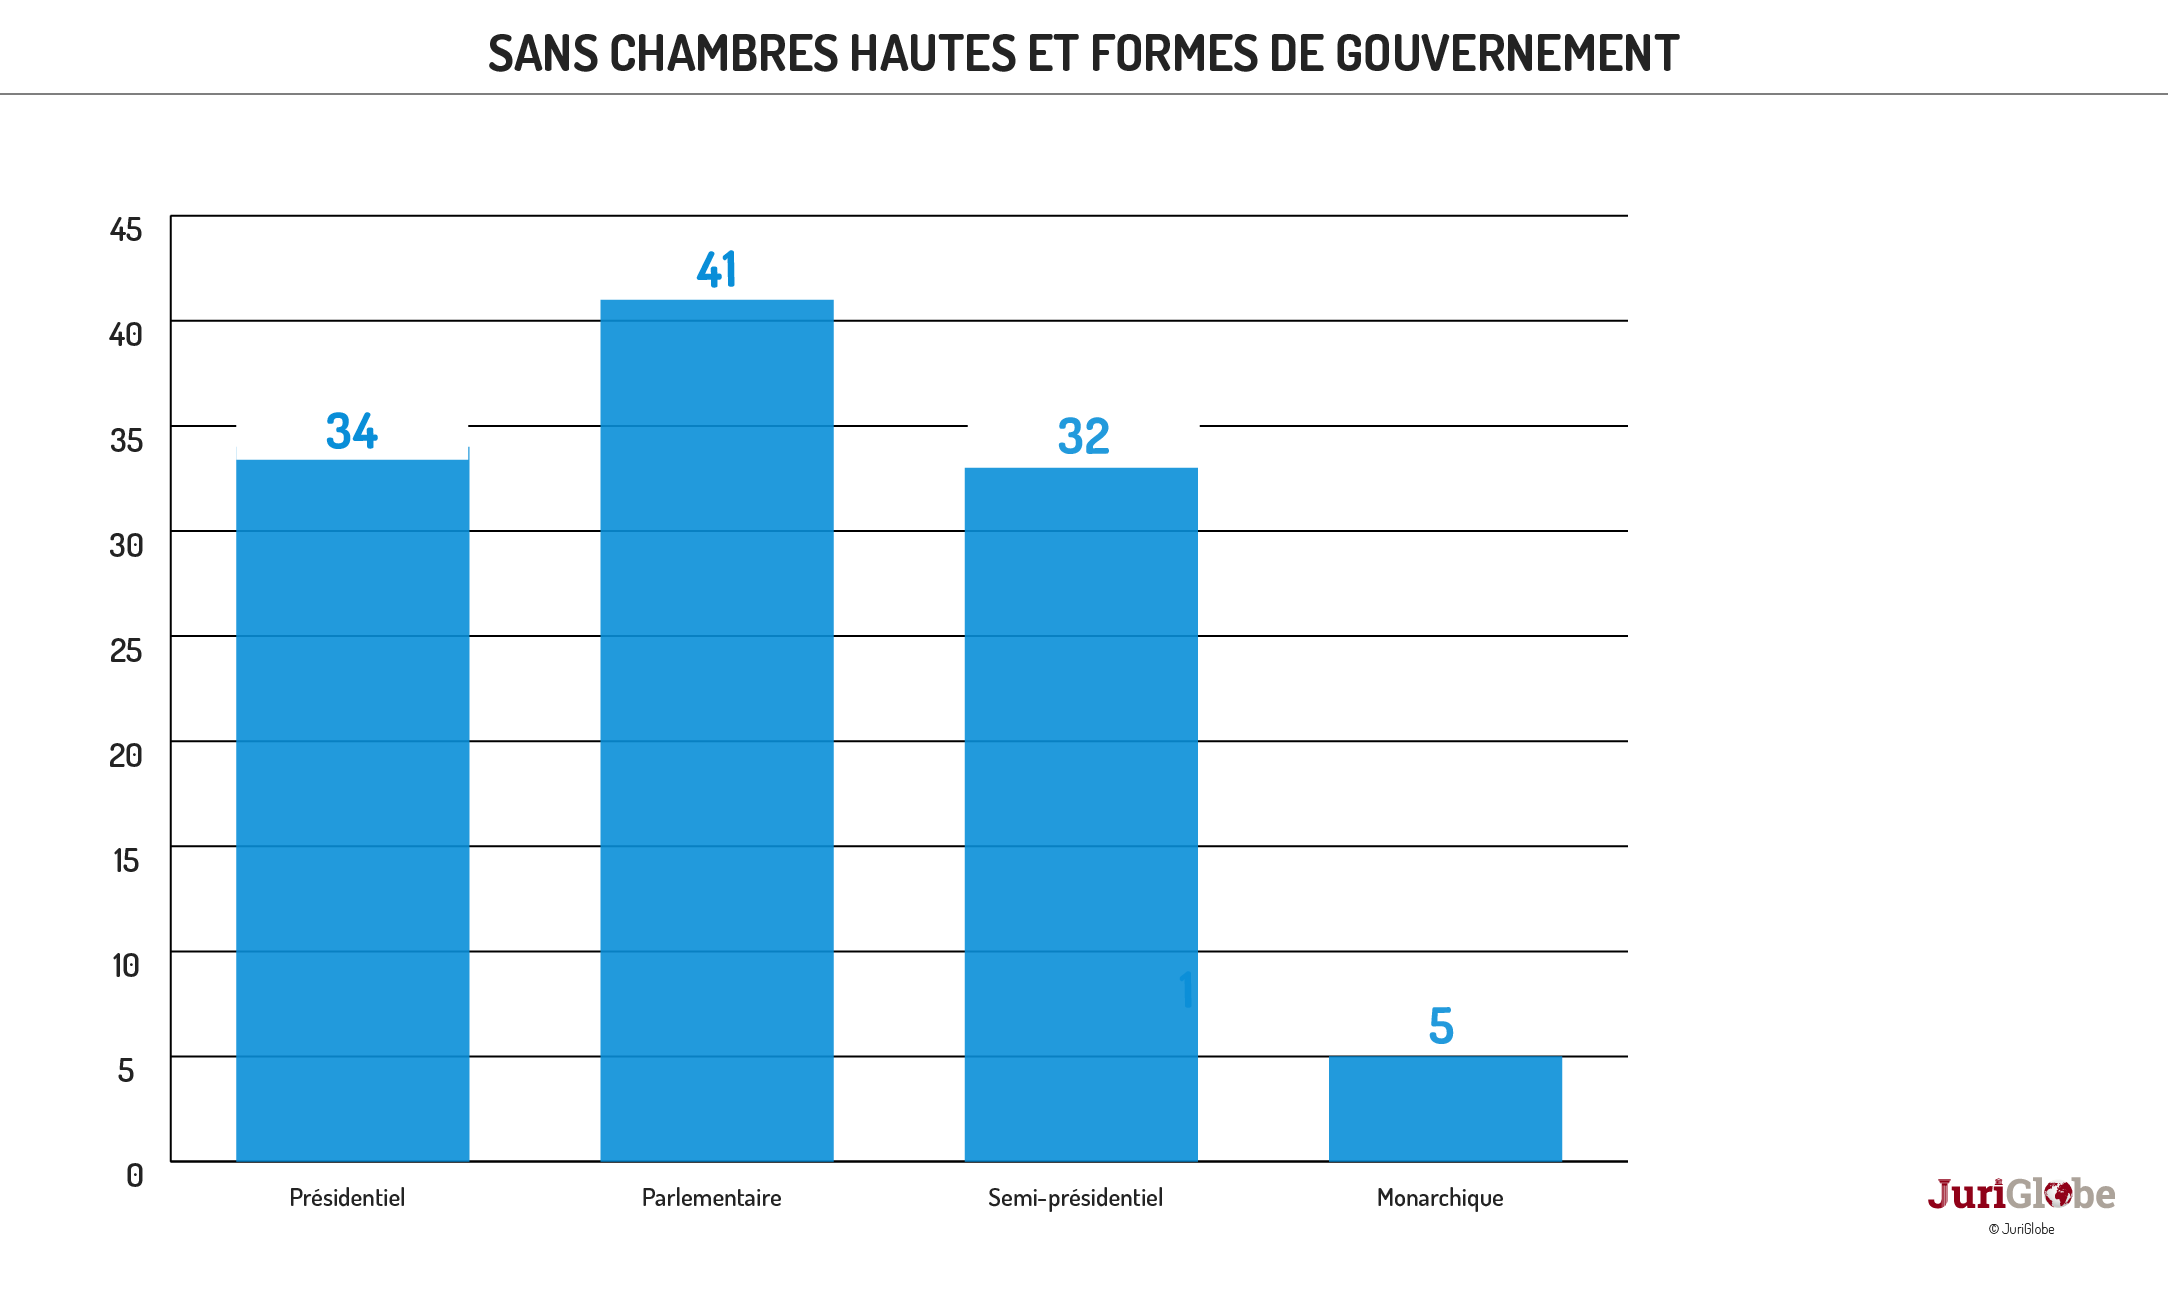 fr 32 271 chambres hautes formes de gouvernement et mode proportionnel et nominations